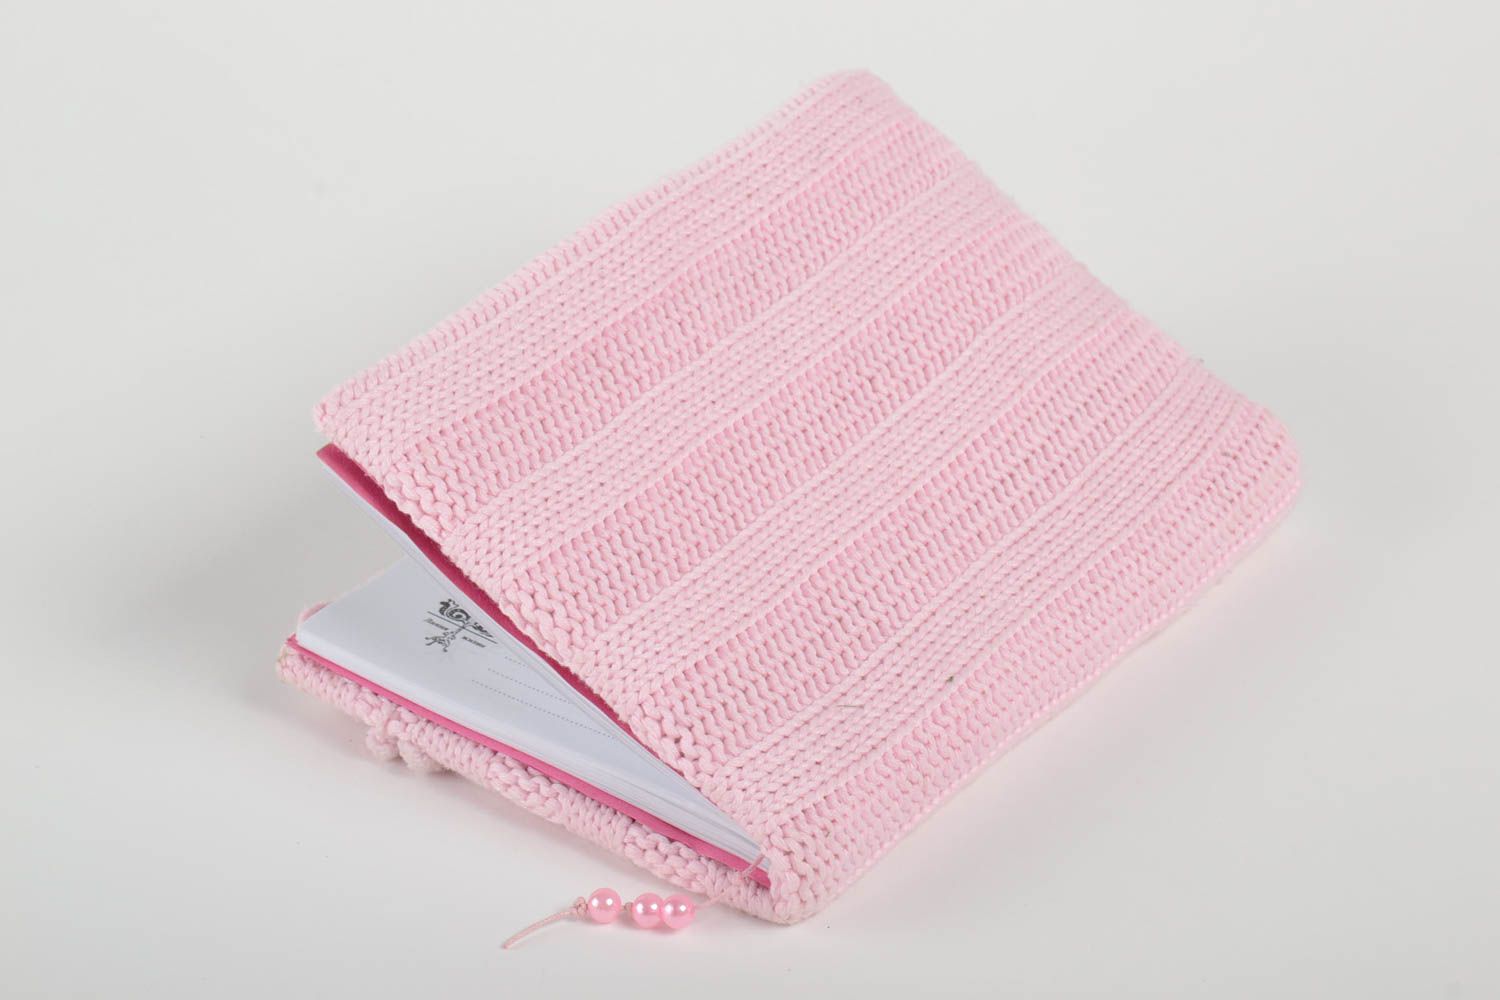 Carnet rose fait main Journal intime tricoté avec aiguilles Cadeau femme photo 3